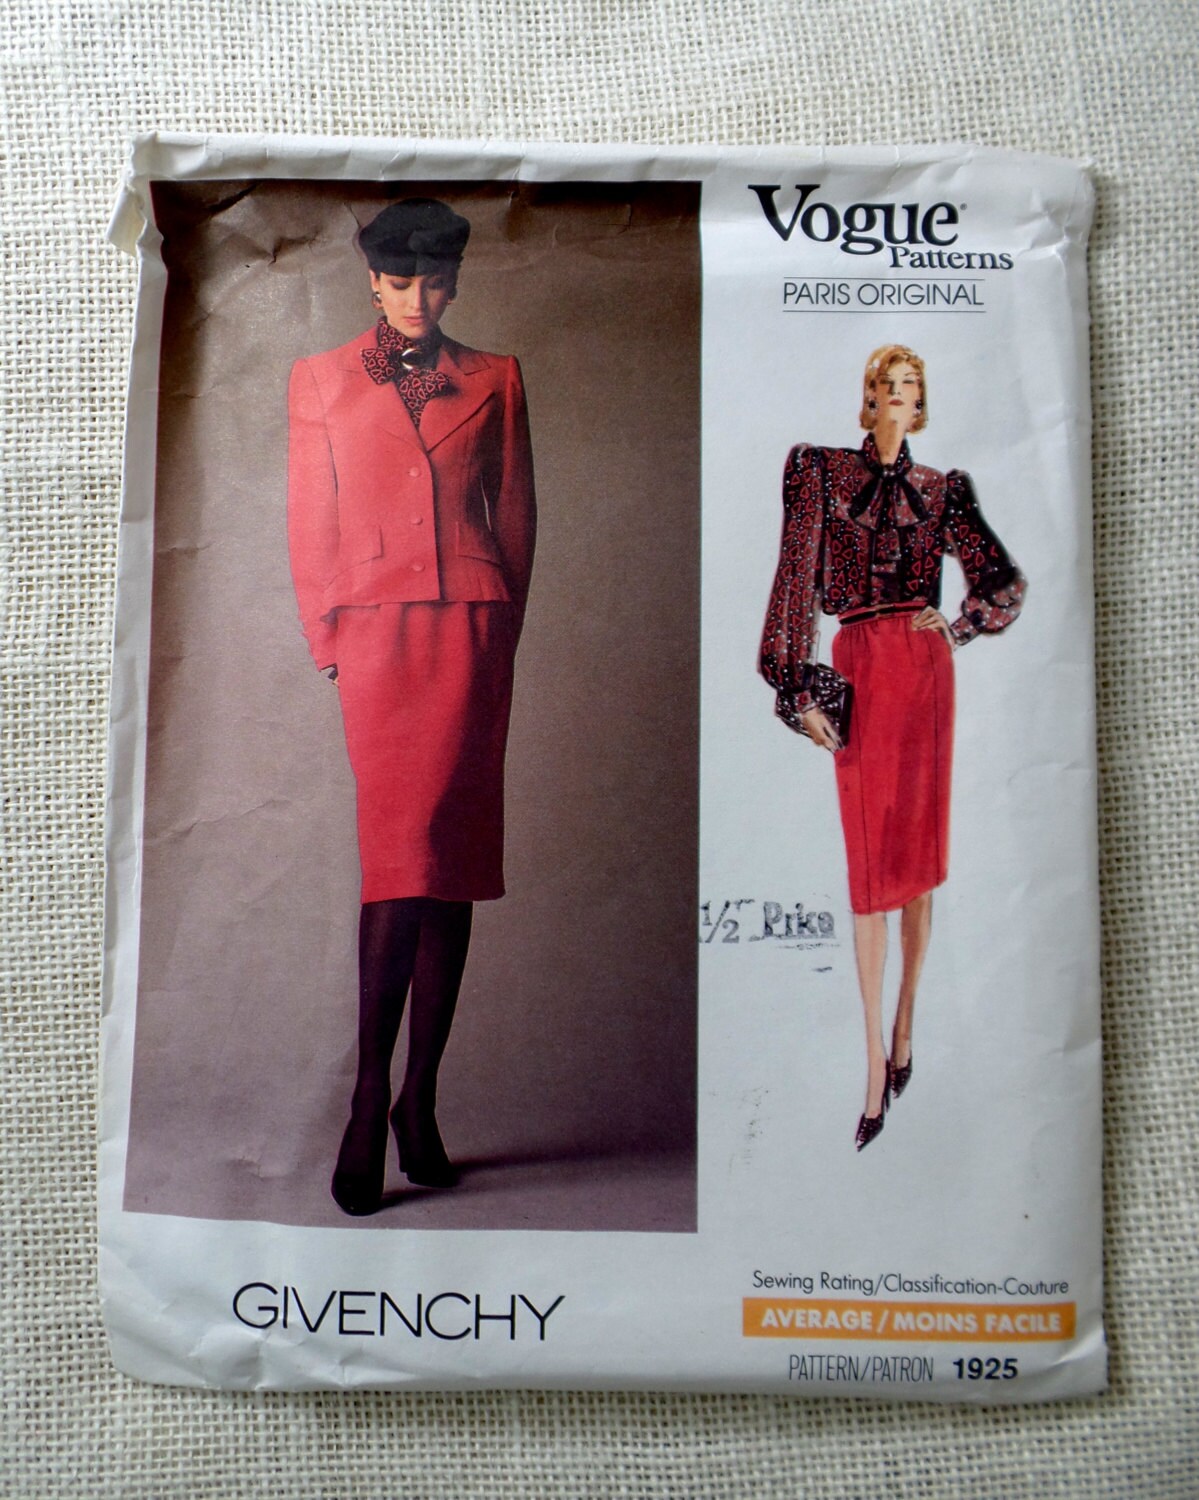 Vogue Paris Original Givenchy 1980s 